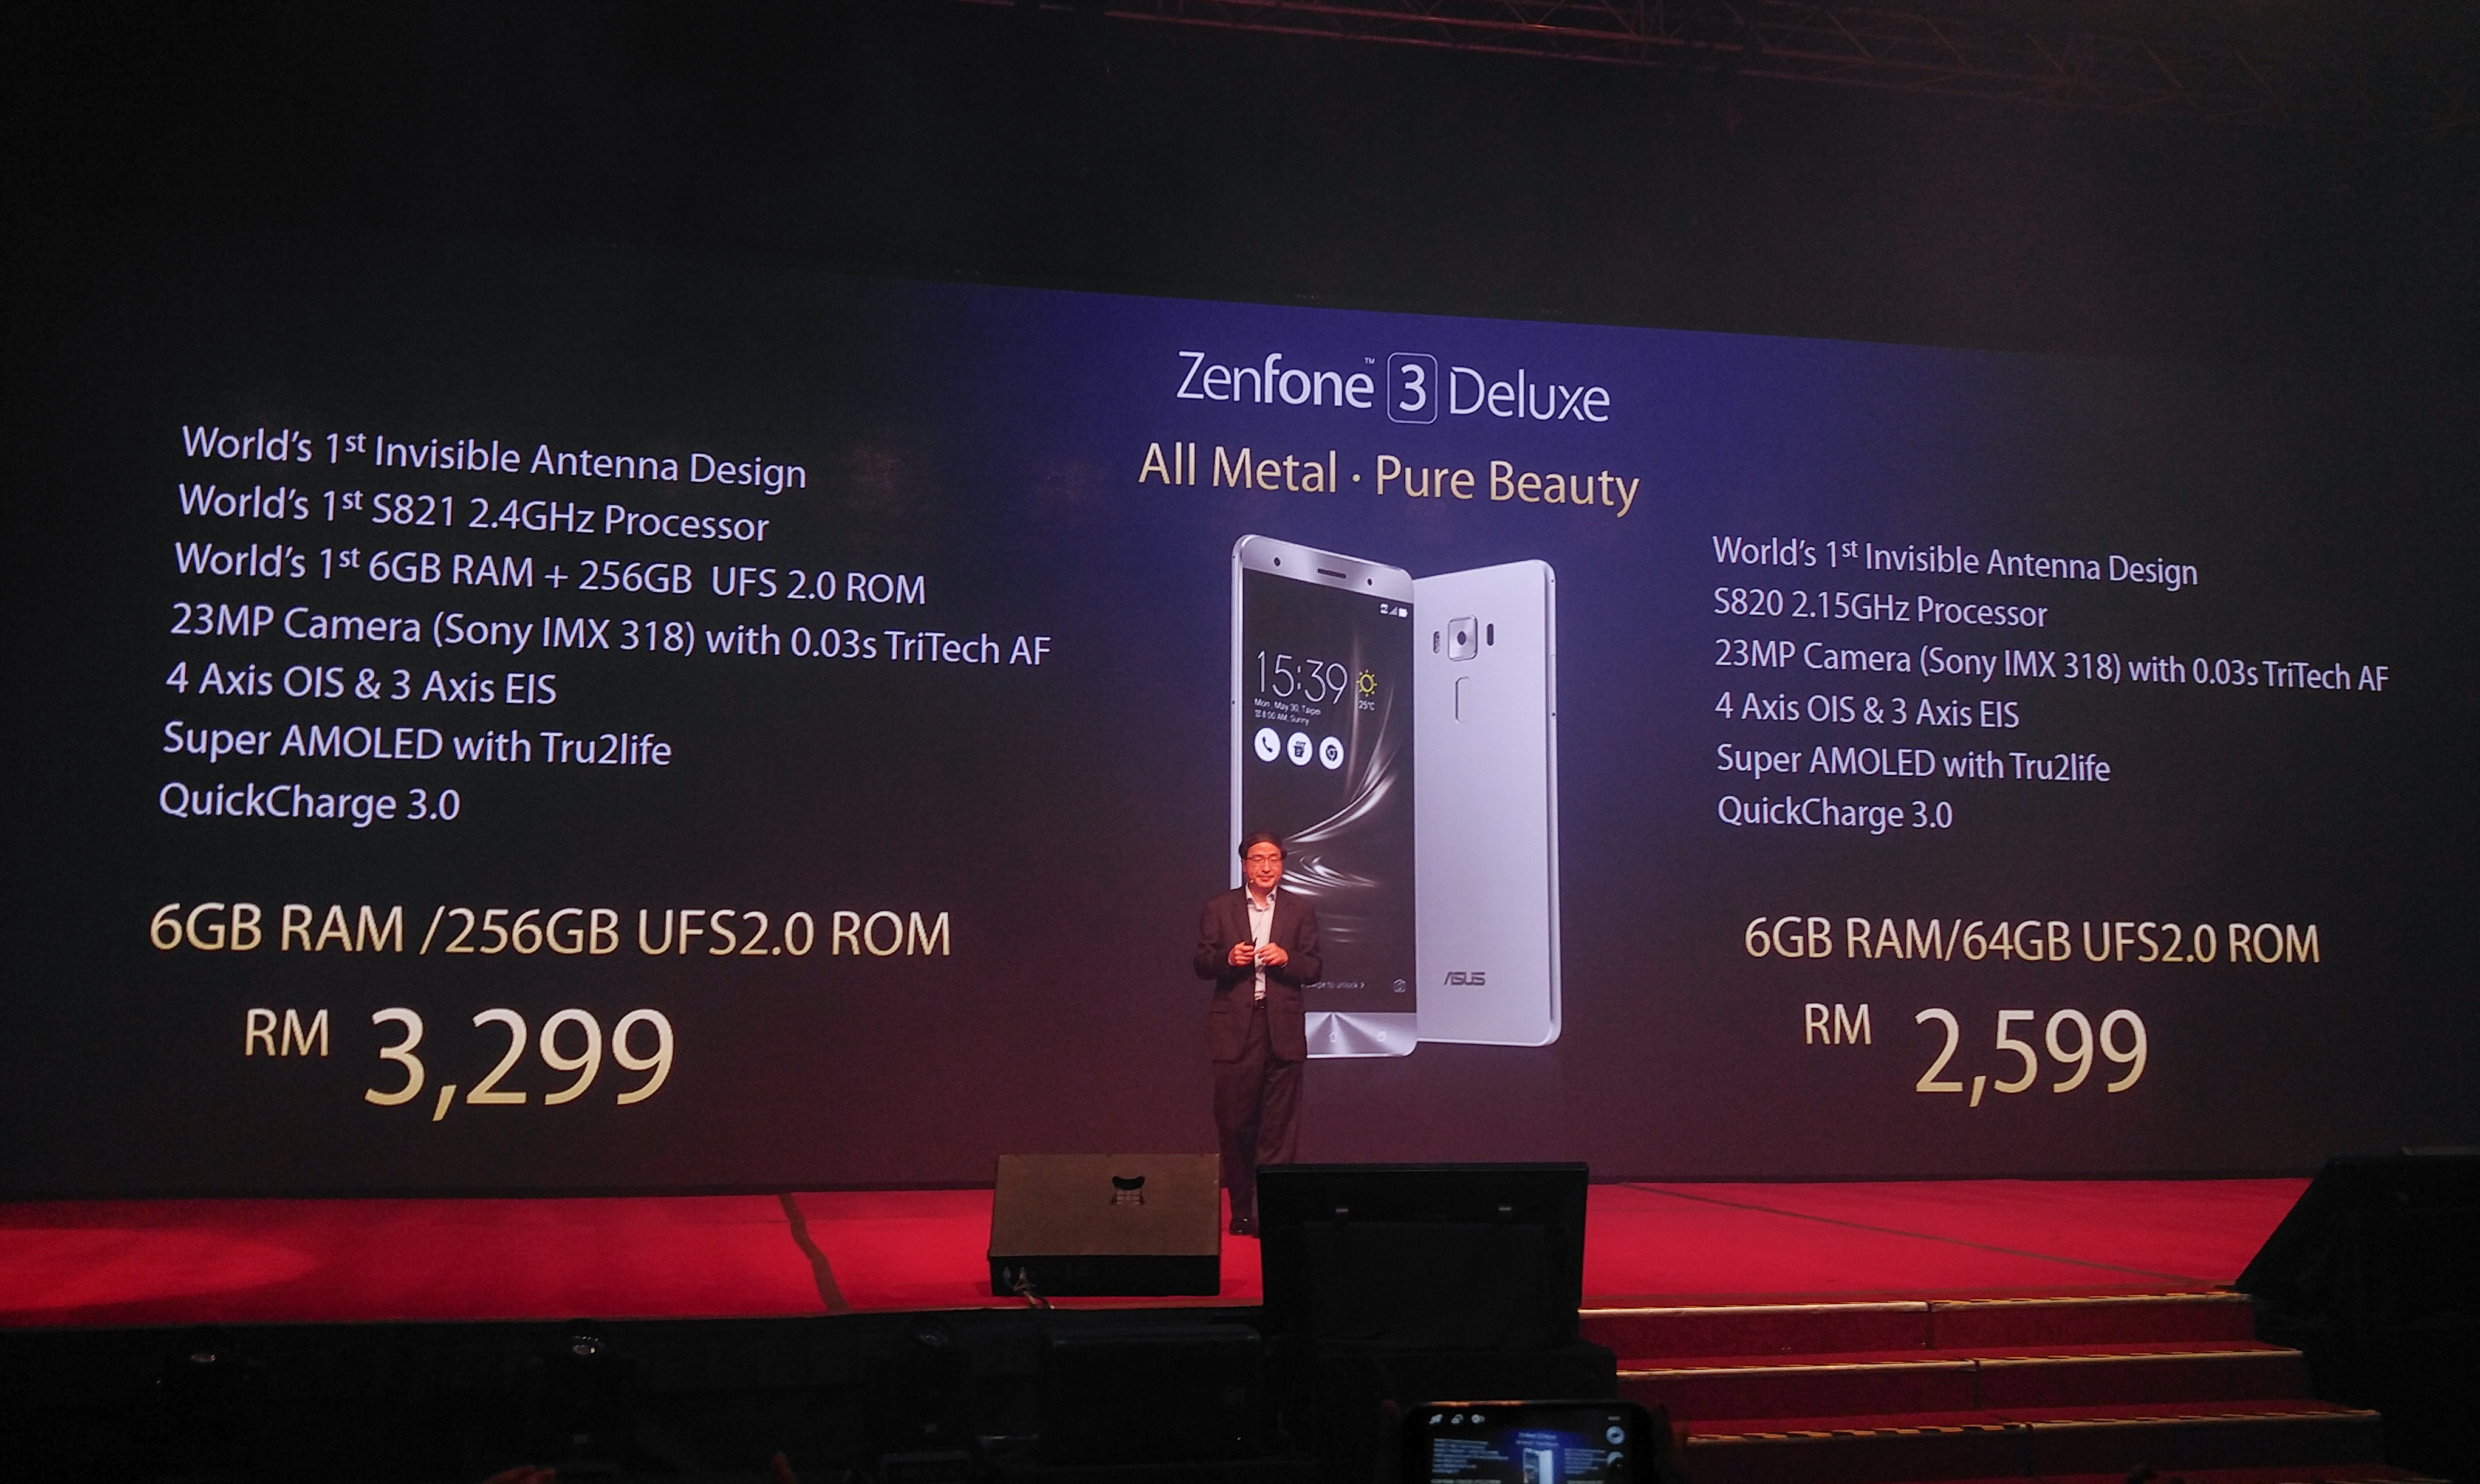 Asus Zenfone 3 Deluxe